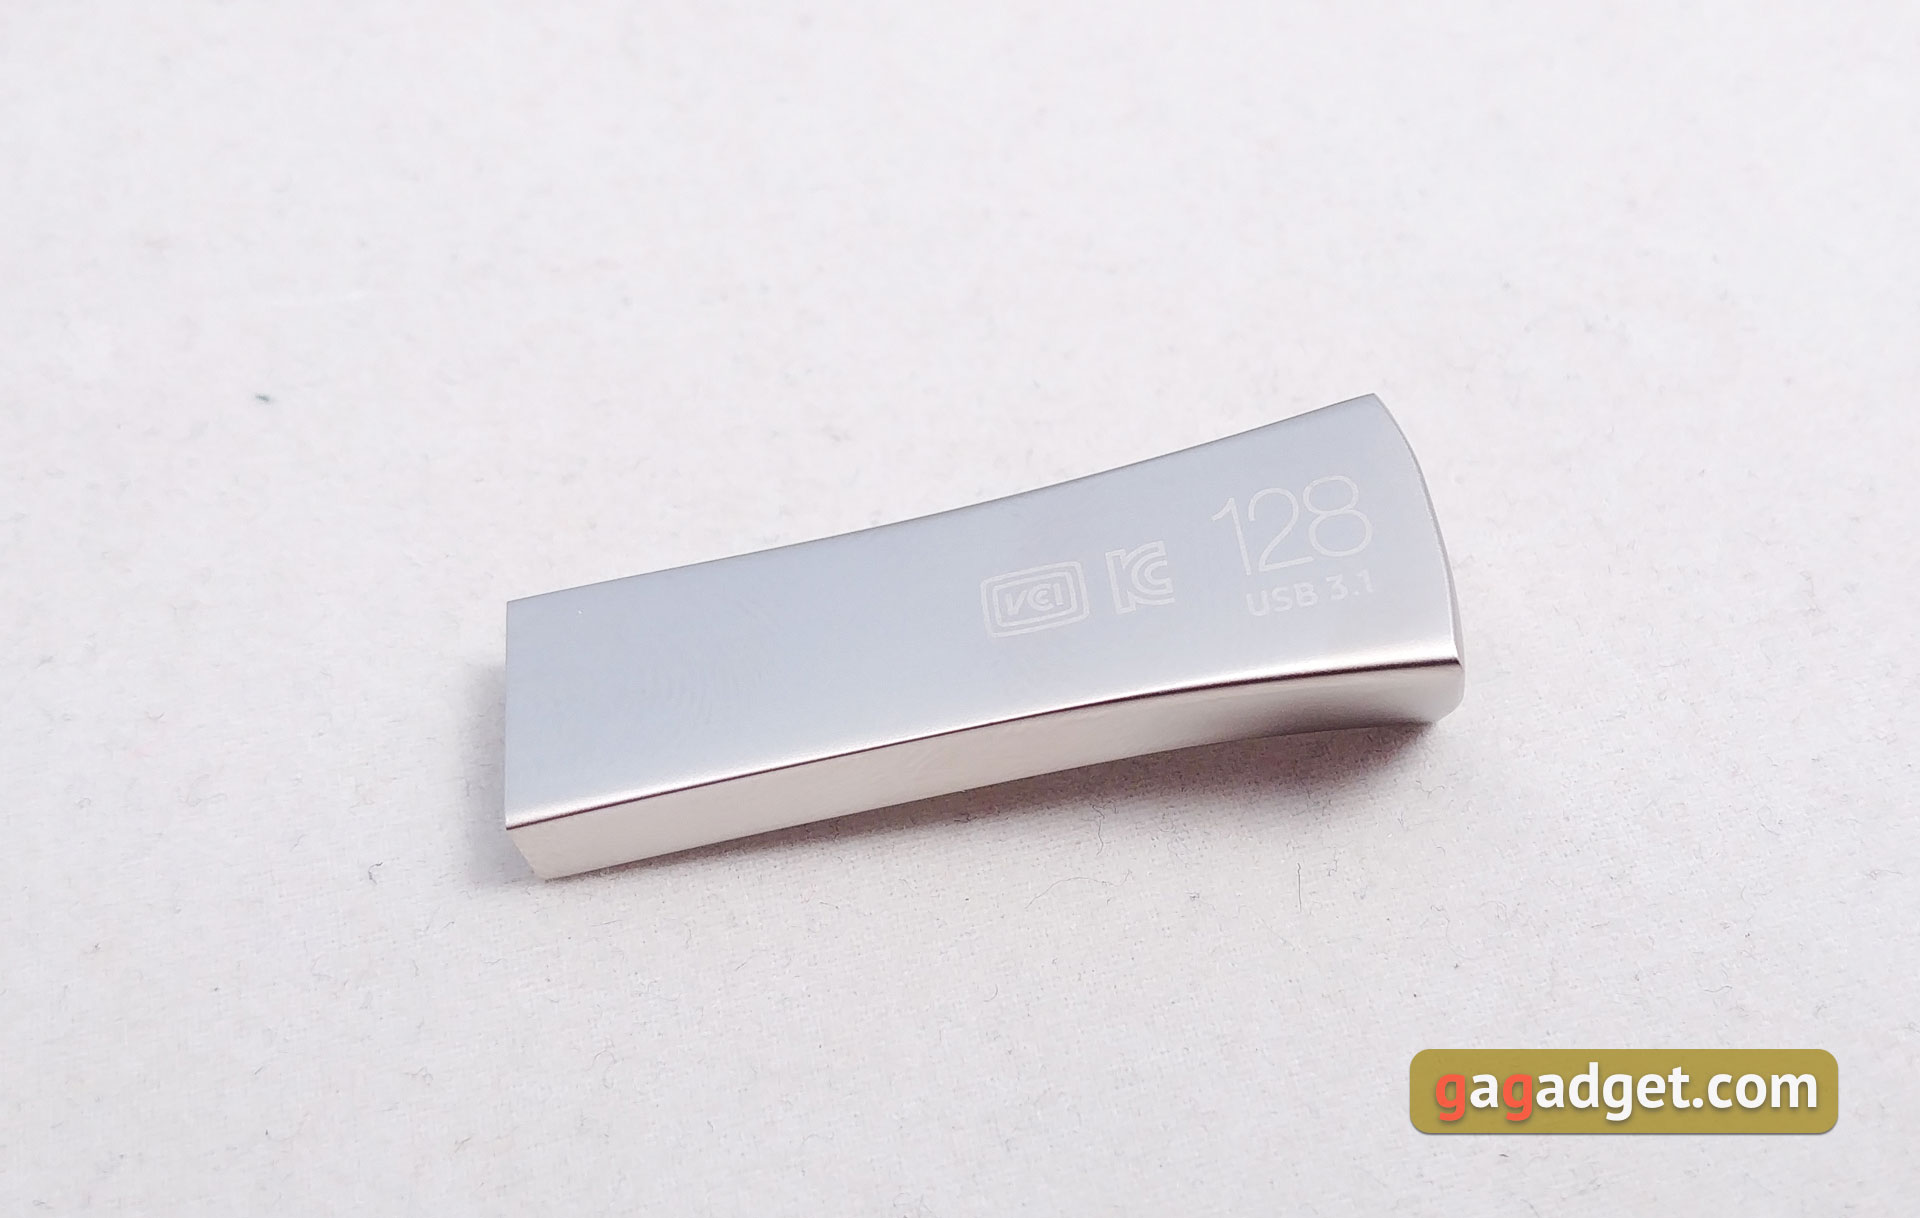 Обзор выносливых MicroSD Samsung PRO Endurance Card и USB-флешки Bar Plus-19